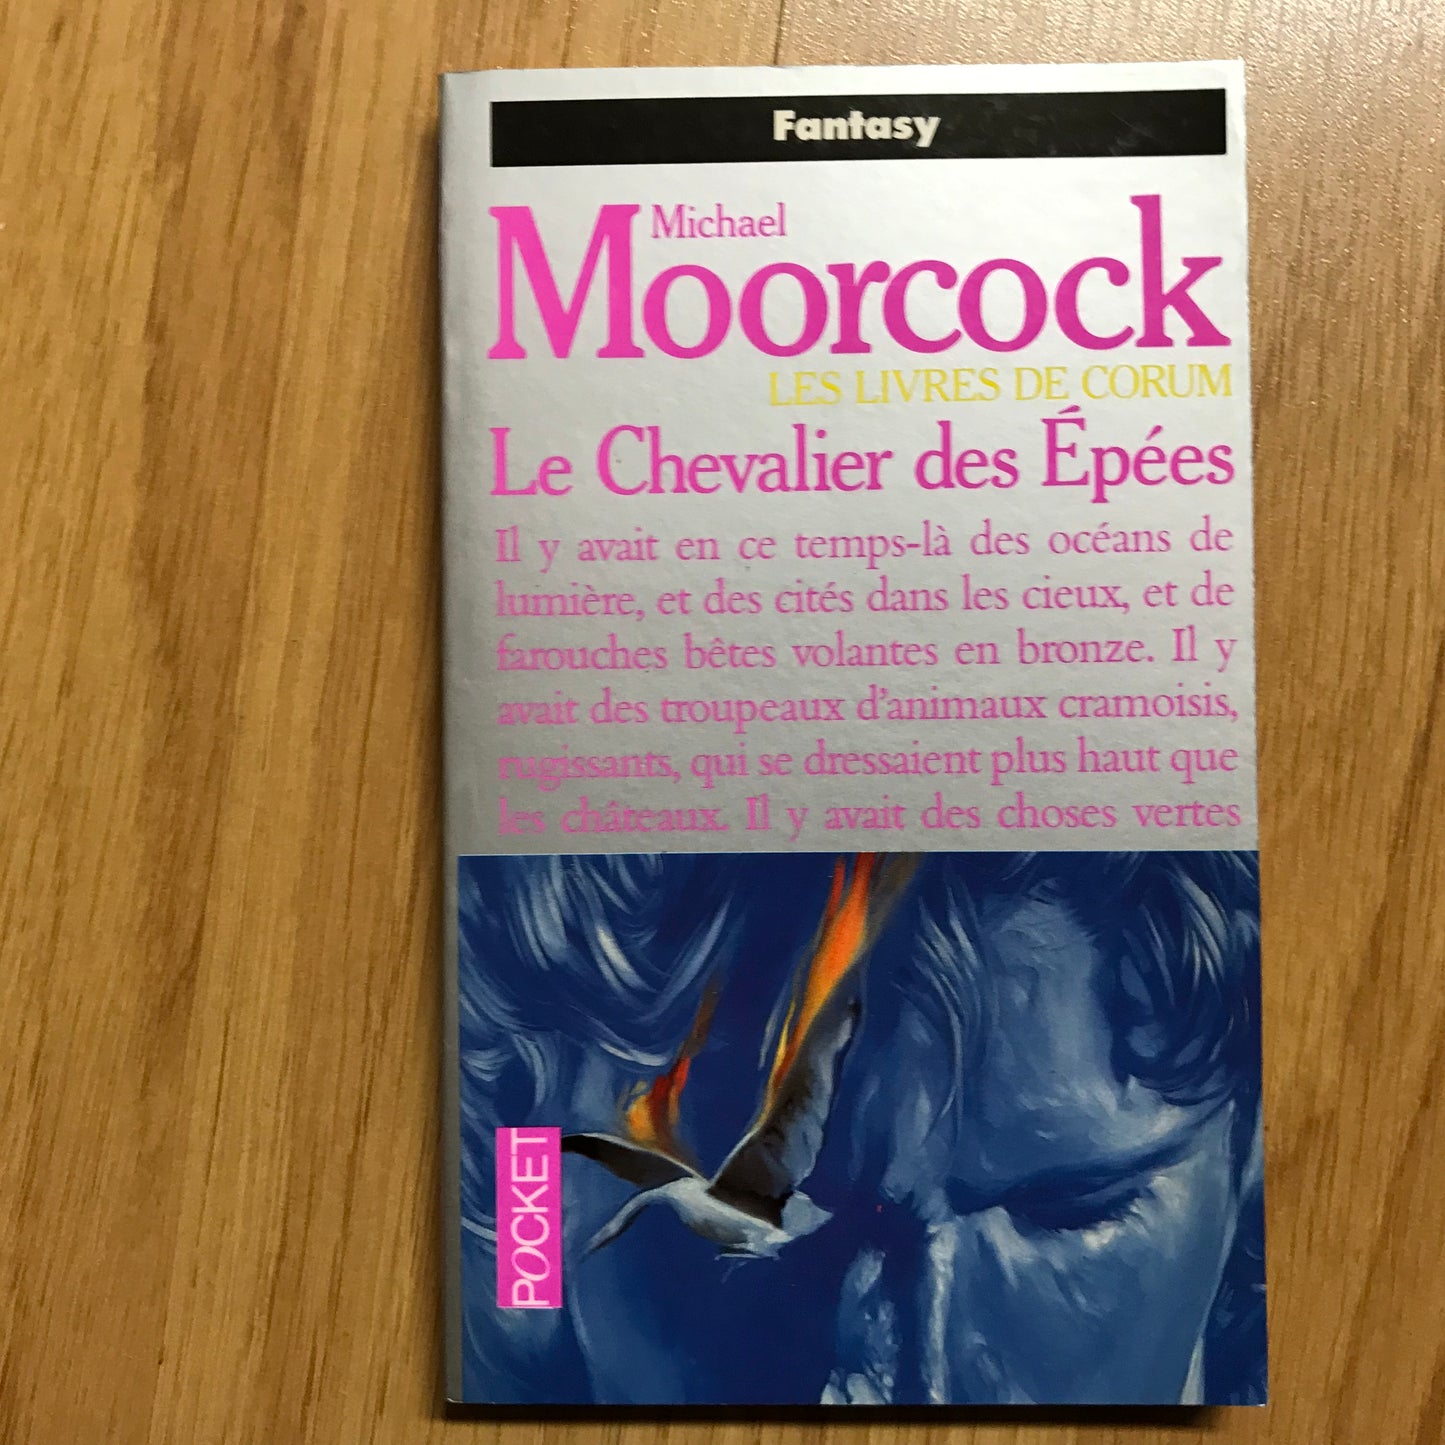 Moorcock, Michael - Les livres de Corum - Le chevalier des épées